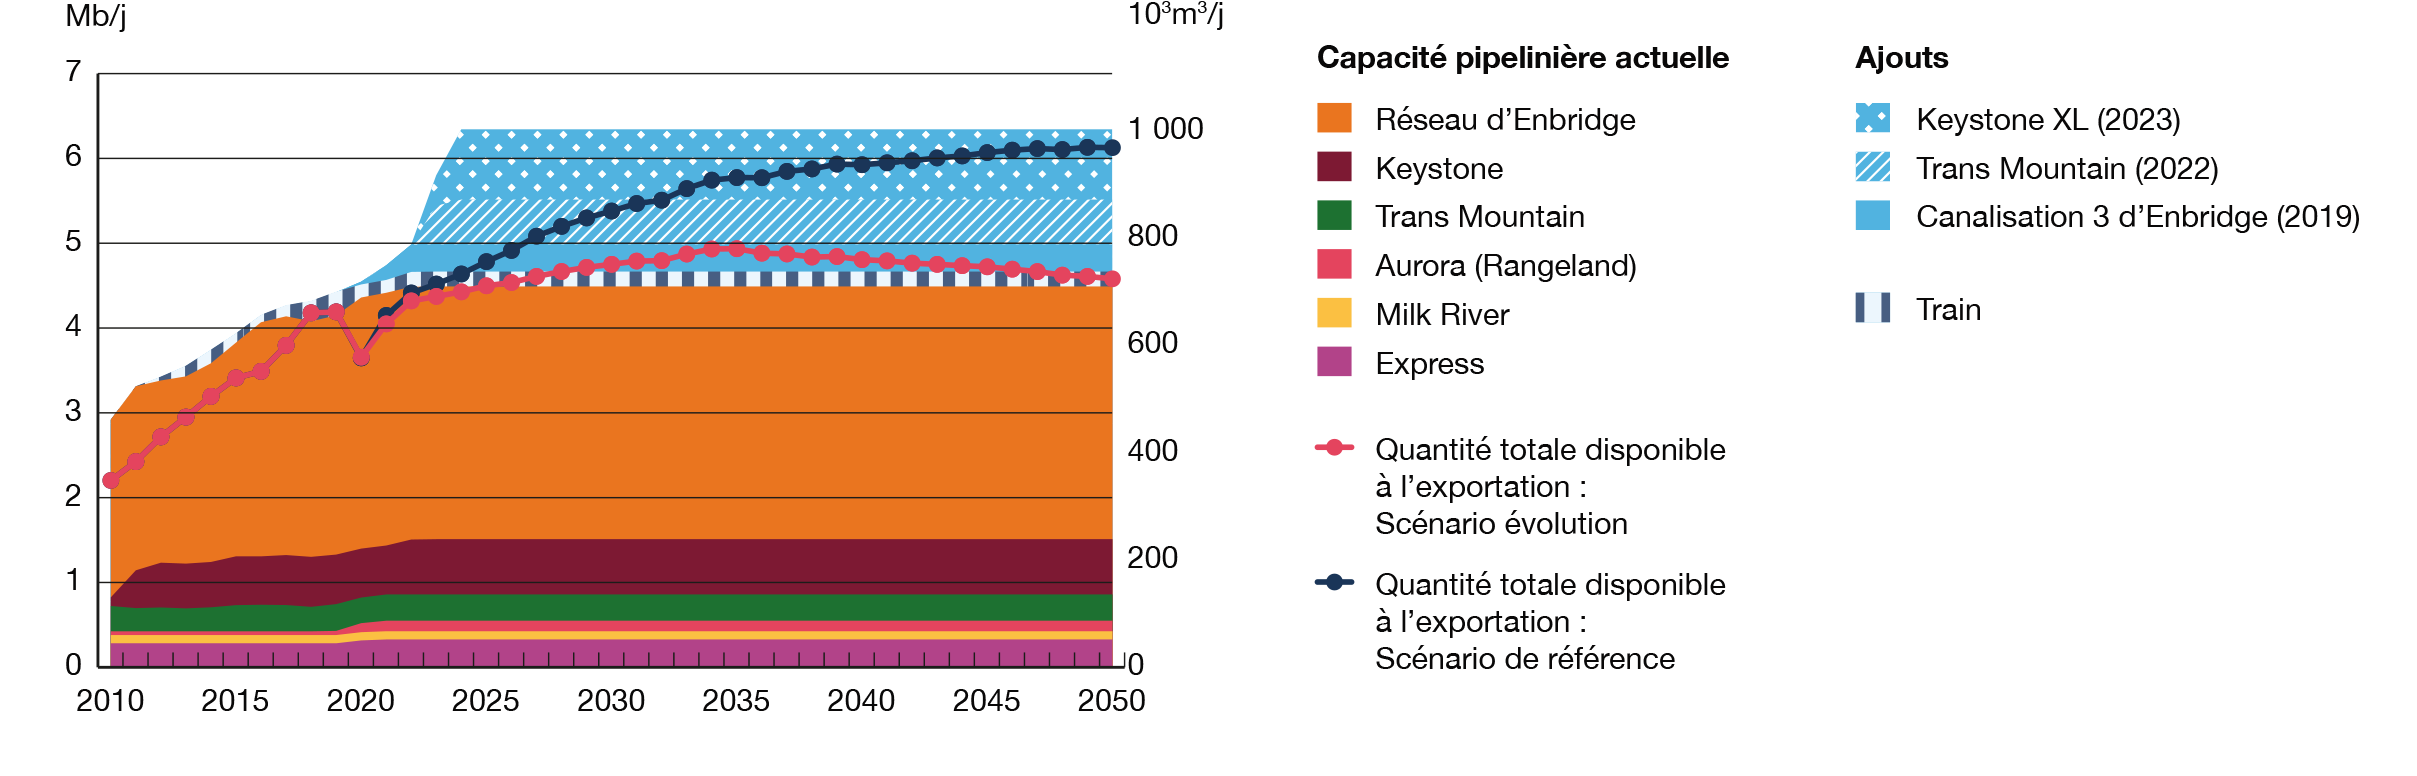 Figure SE.8 – Comparaison de la capacité des oléoducs et de l’approvisionnement total disponible à l’exportation – Scénarios Évolution et de référence